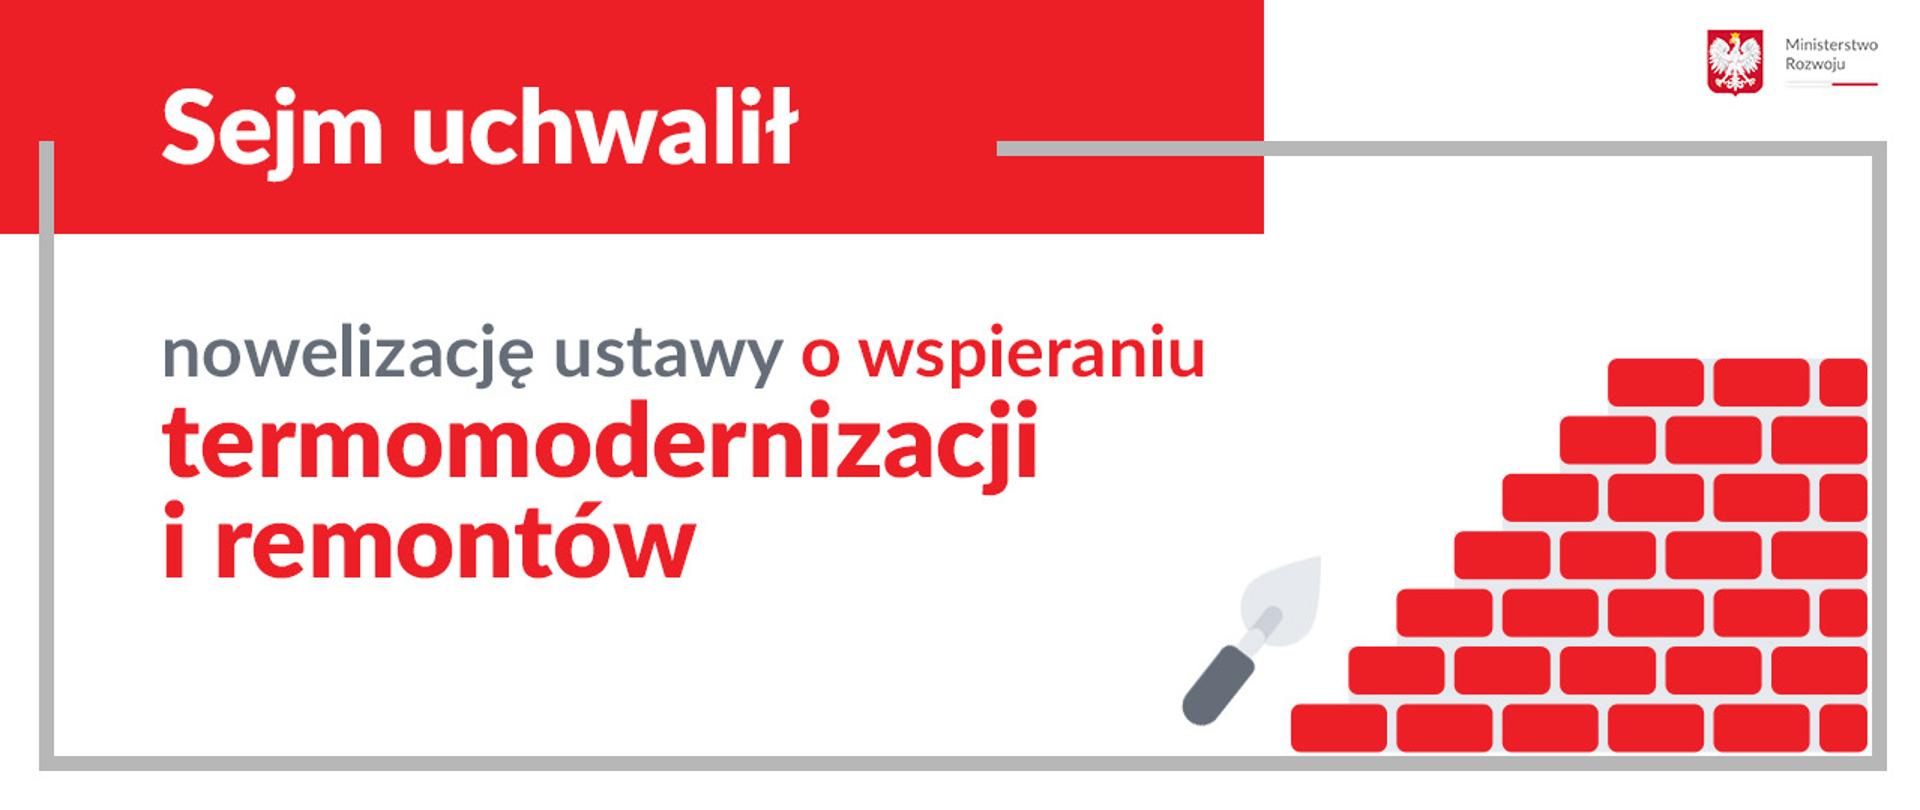 Sejm uchwalił nowelizację ustawy o wspieraniu termomodernizacji i remontów. W prawym górnym rogu logo MR. Poniżej grafika z cegłami.